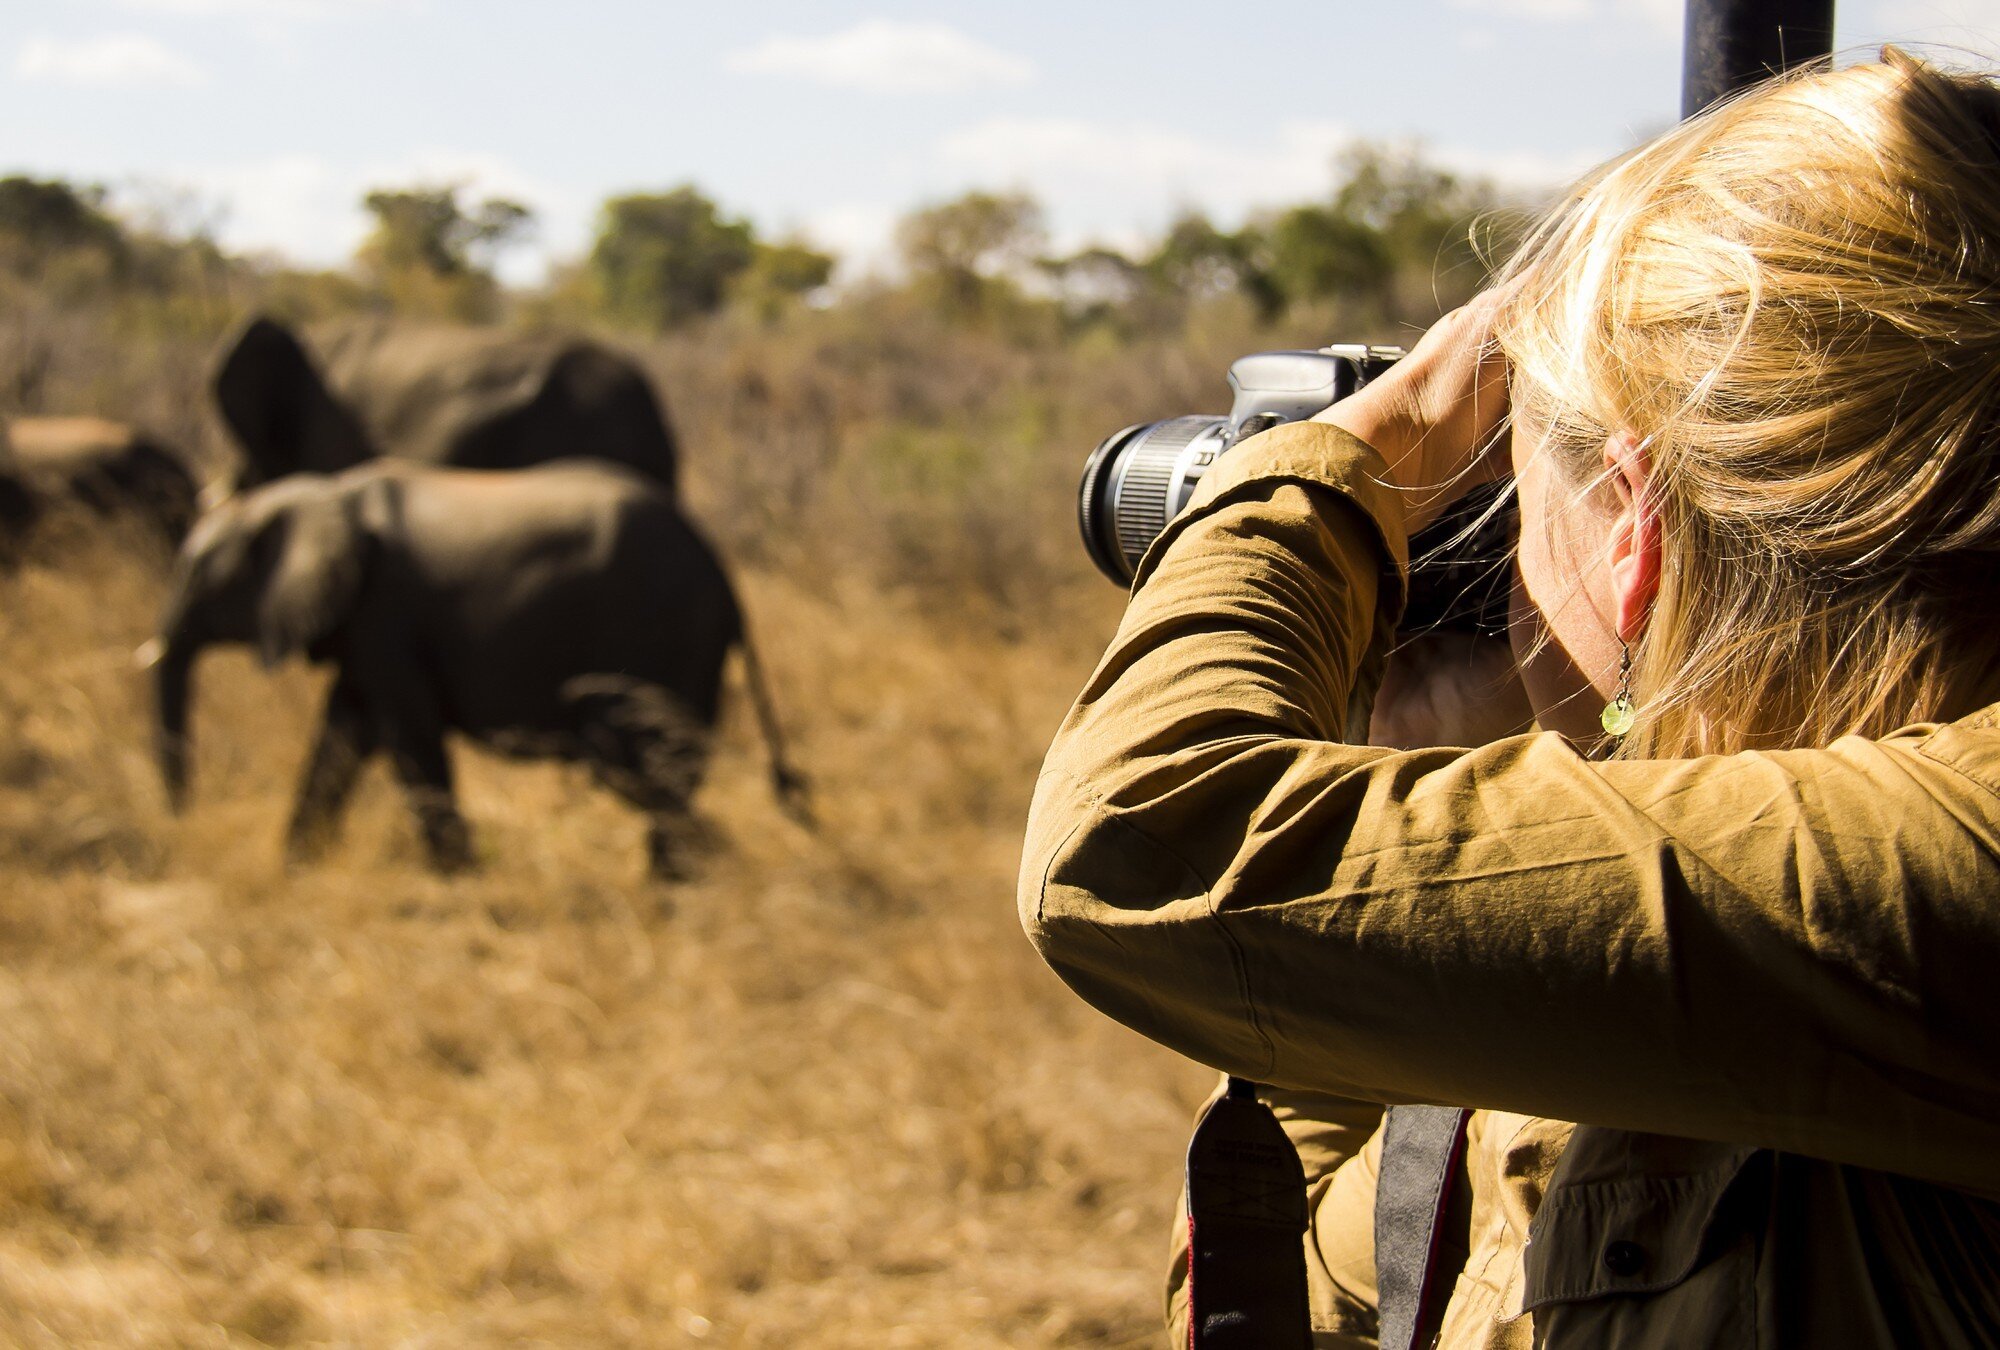 Girl photographing elephants on safari